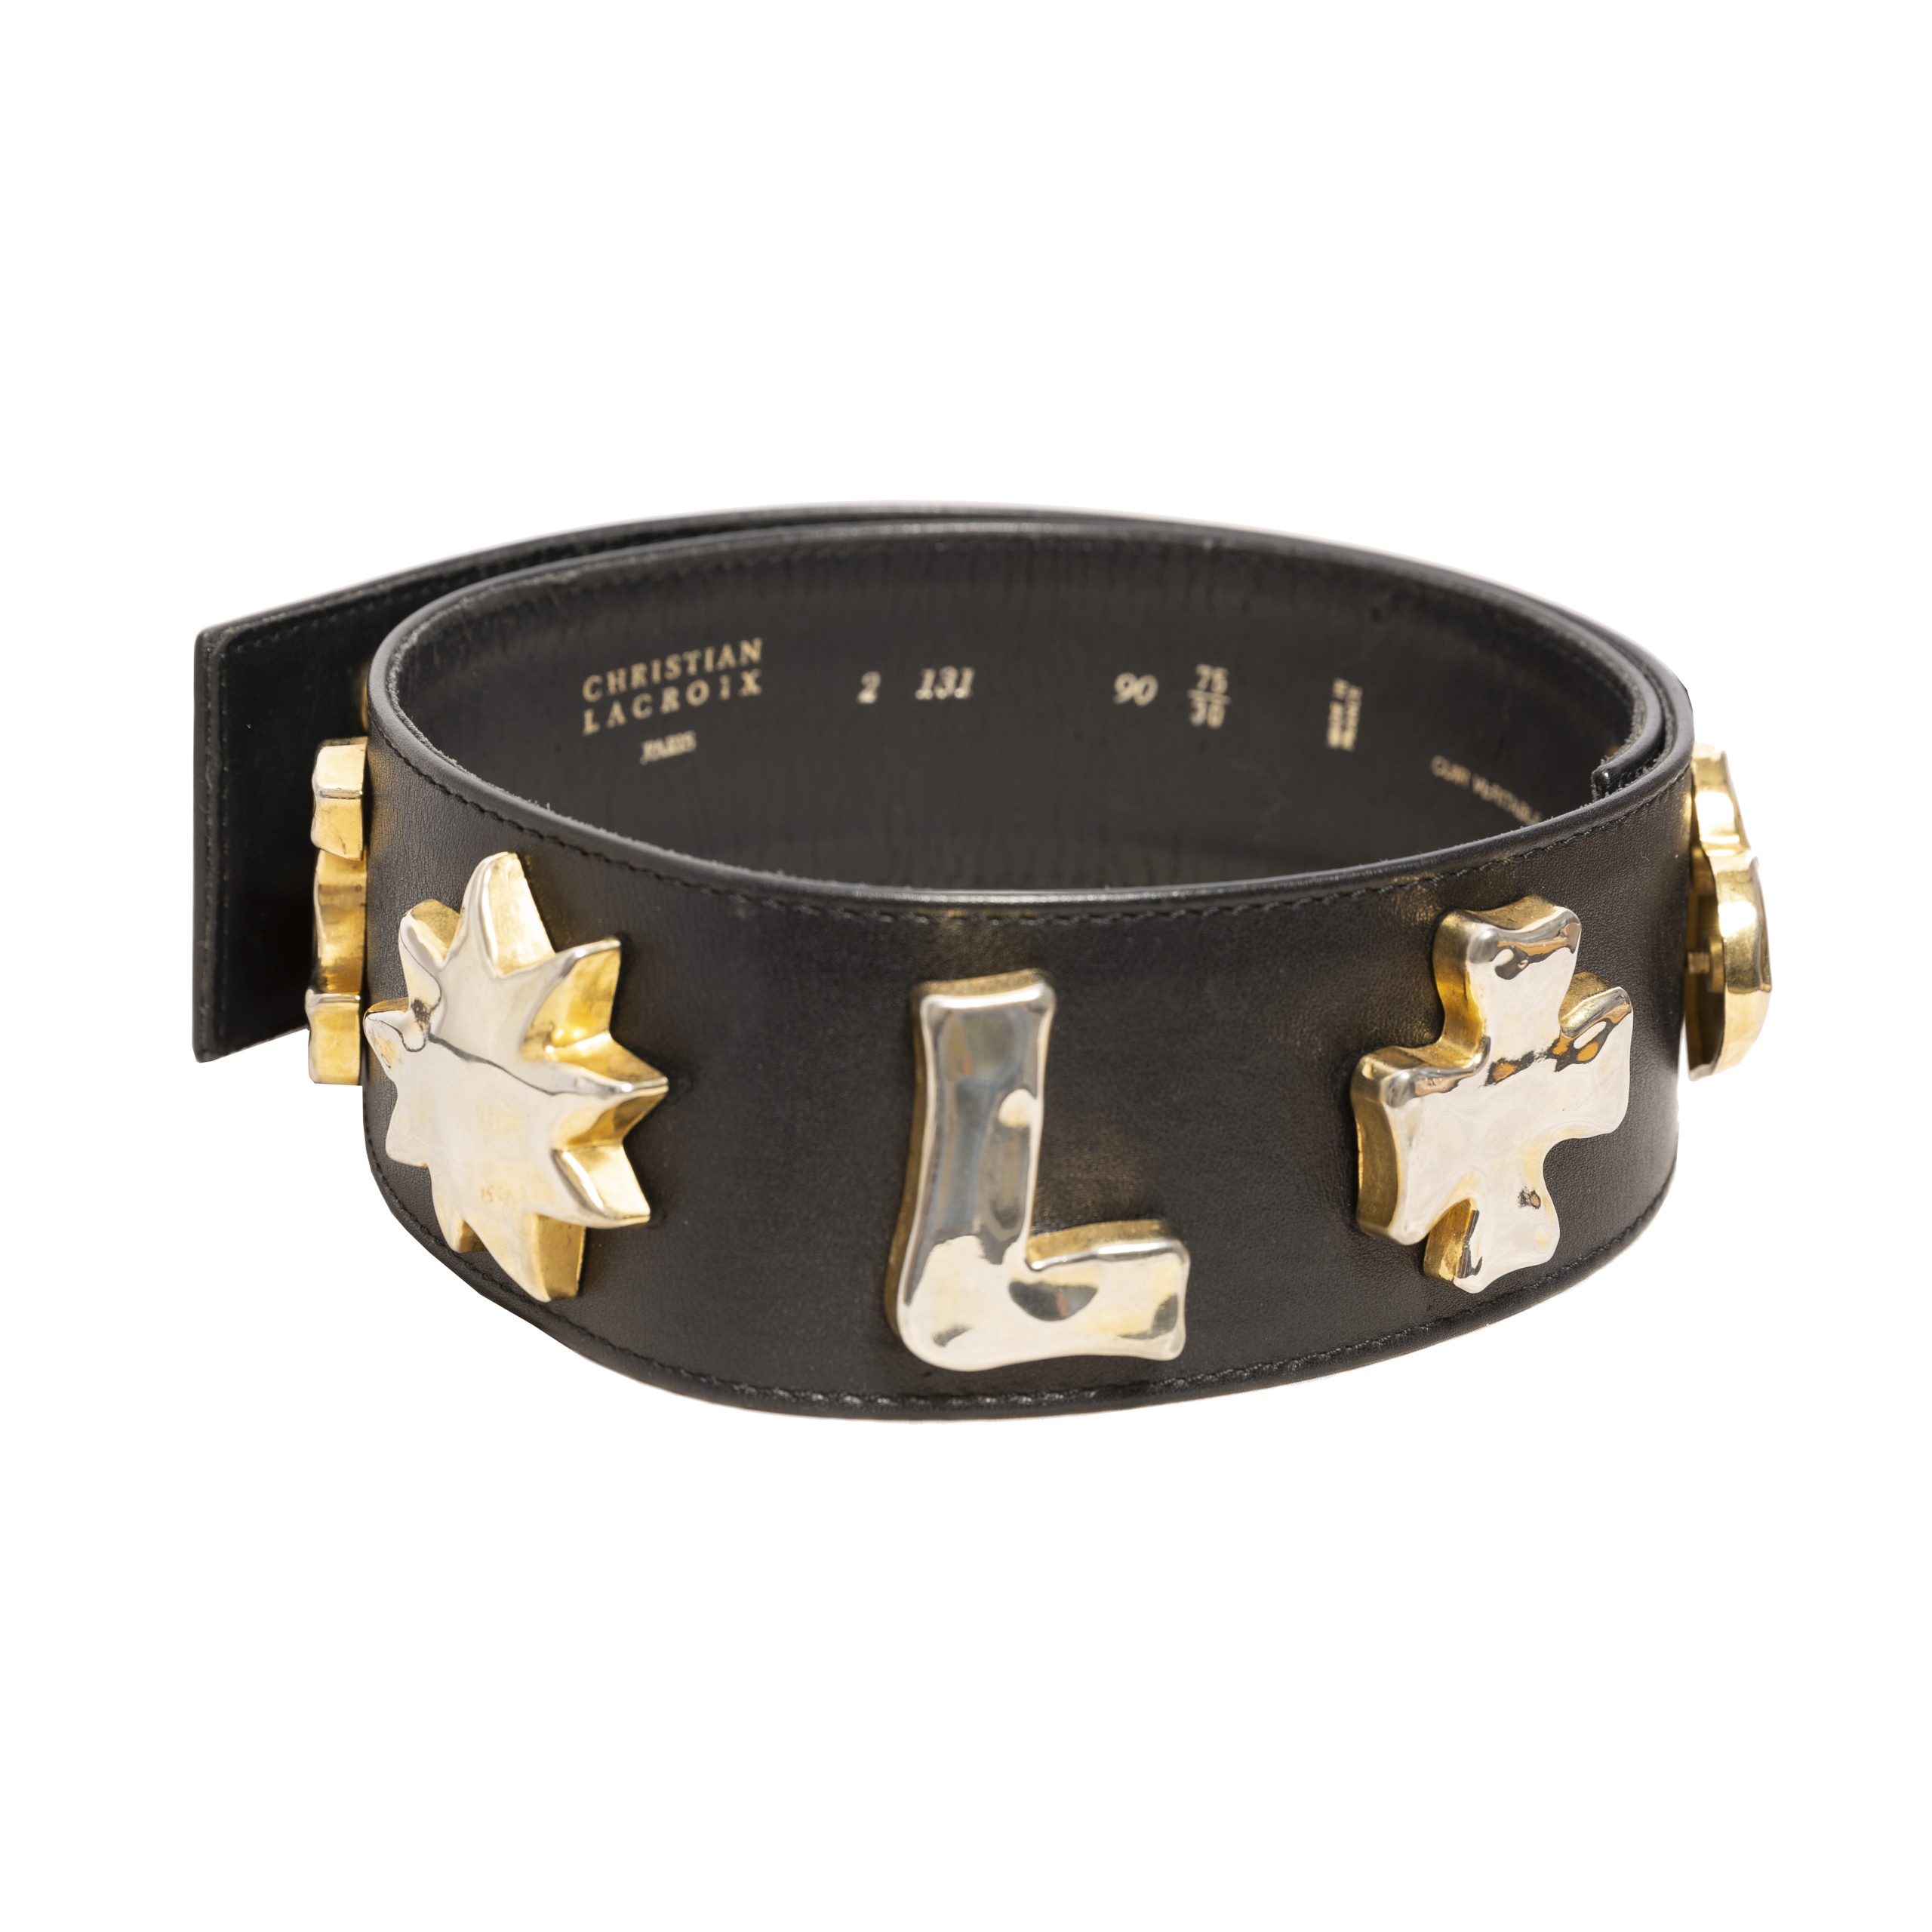 Vintage black leather belt with gold letters